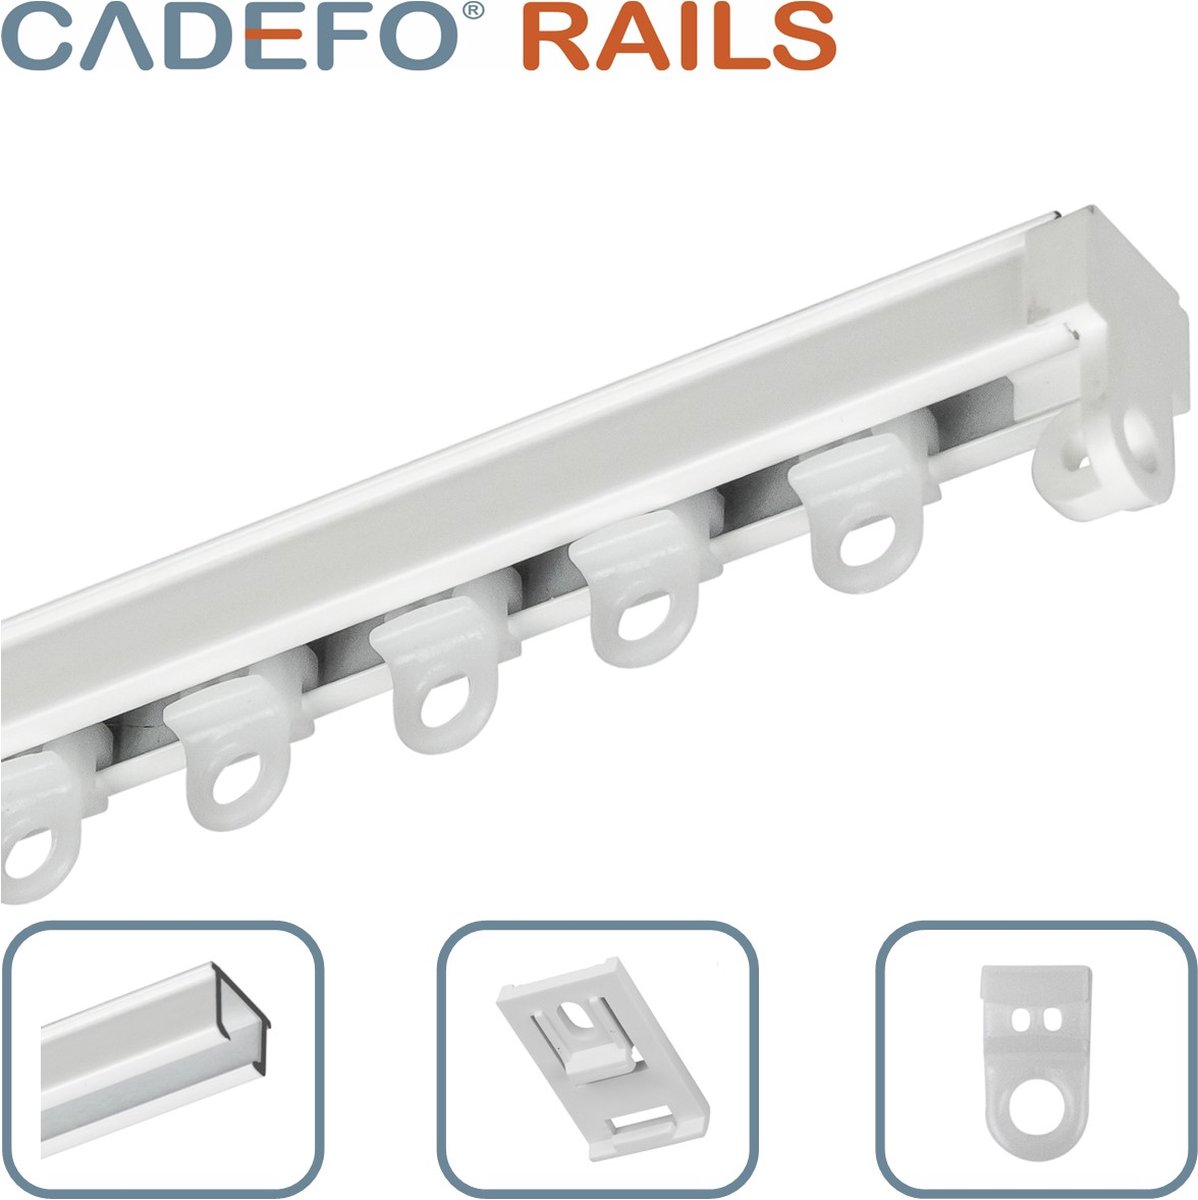 CADEFO RAILS (201 - 250 cm) Gordijnrails - Compleet op maat! - UIT 1 STUK - Leverbaar tot 6 meter - Plafondbevestiging - Lengte 240 cm